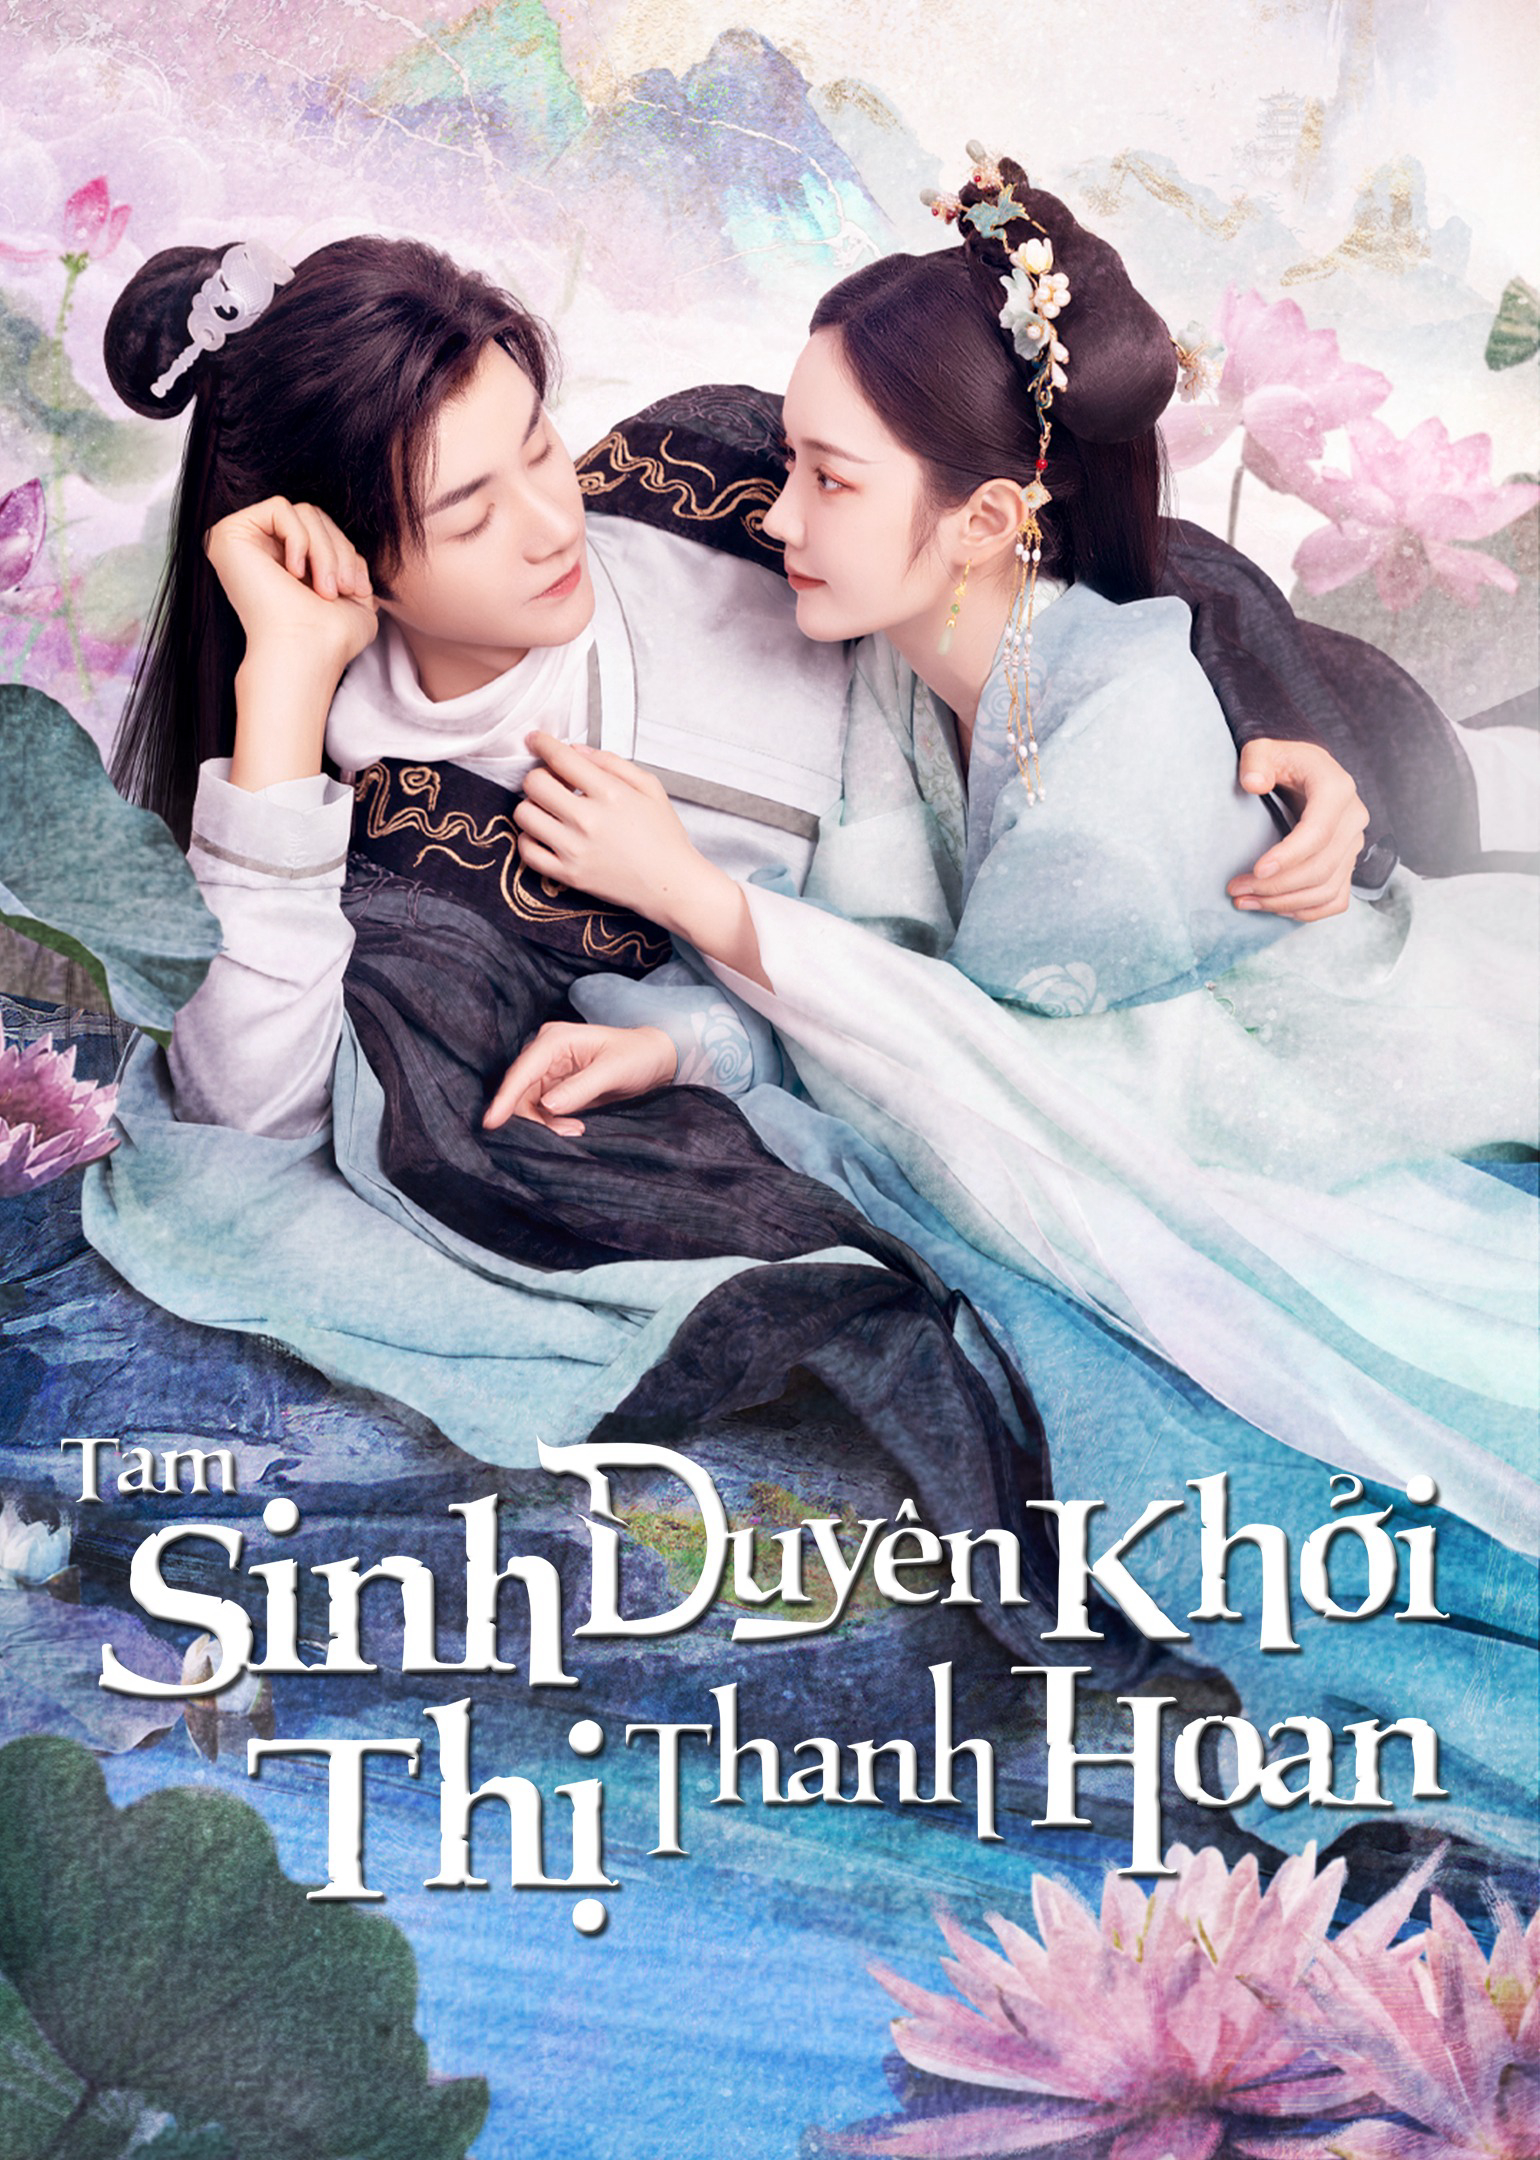 Xem Phim Tam Sinh Duyên Khởi Thị Thanh Hoan  (The Origin of Eternity)